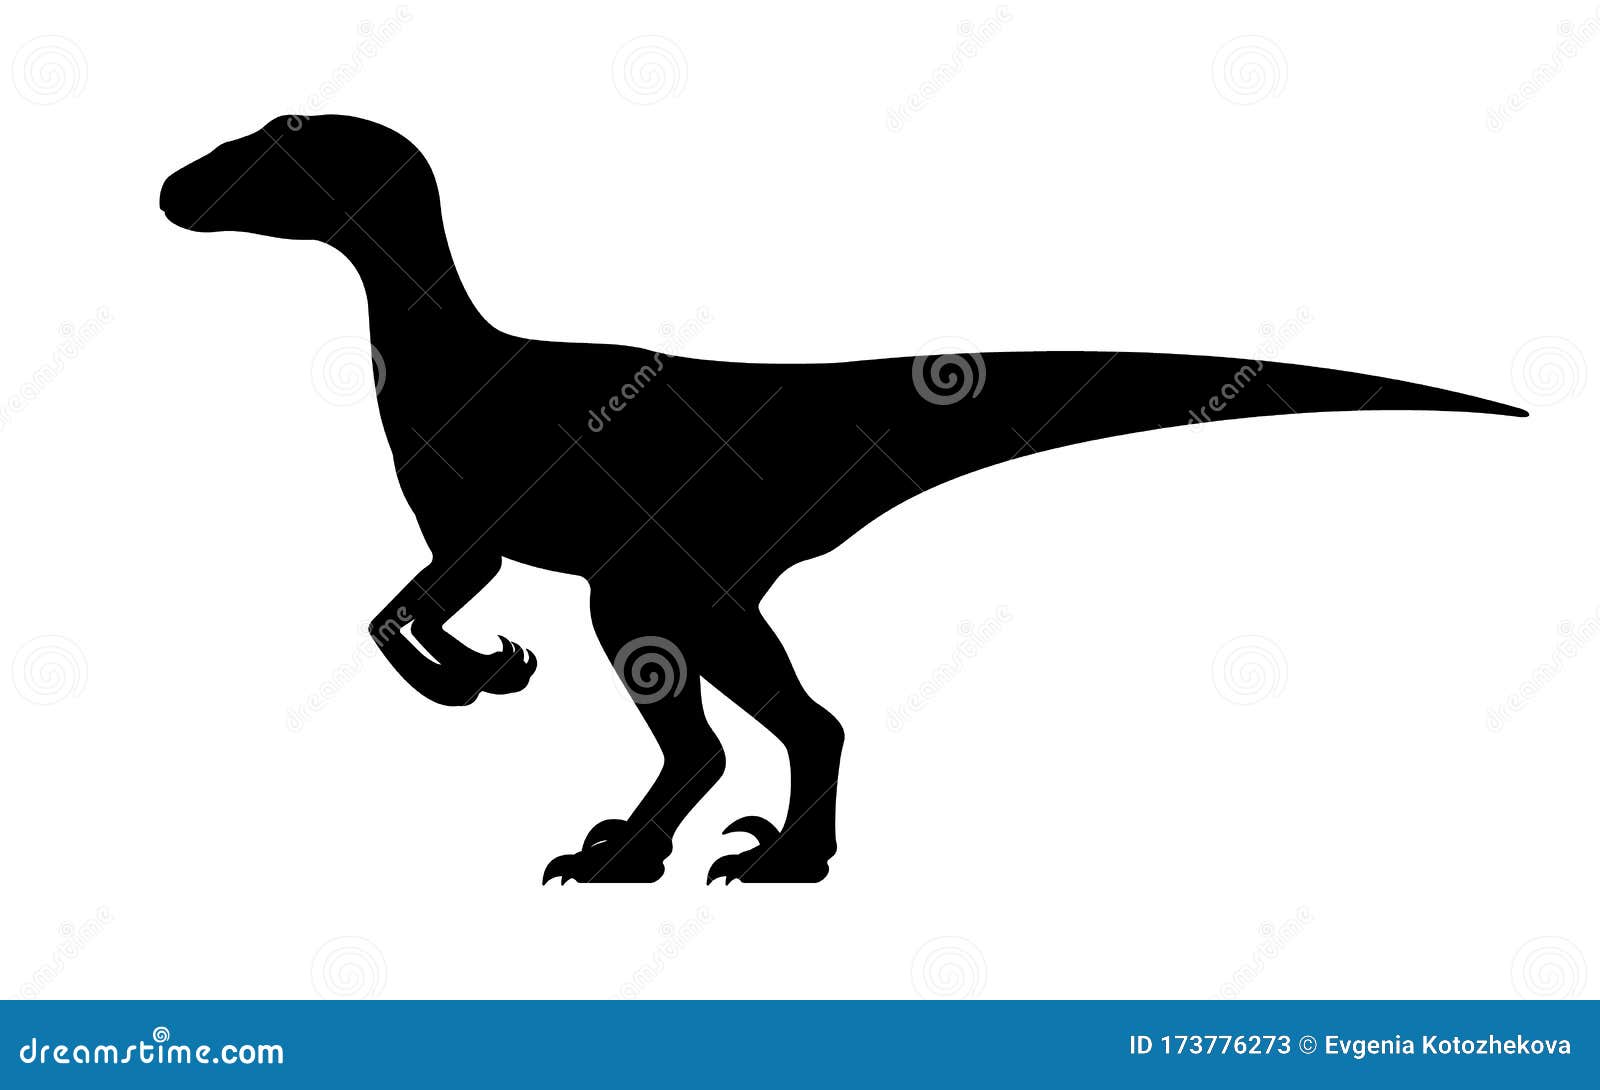  velociraptor silhouette